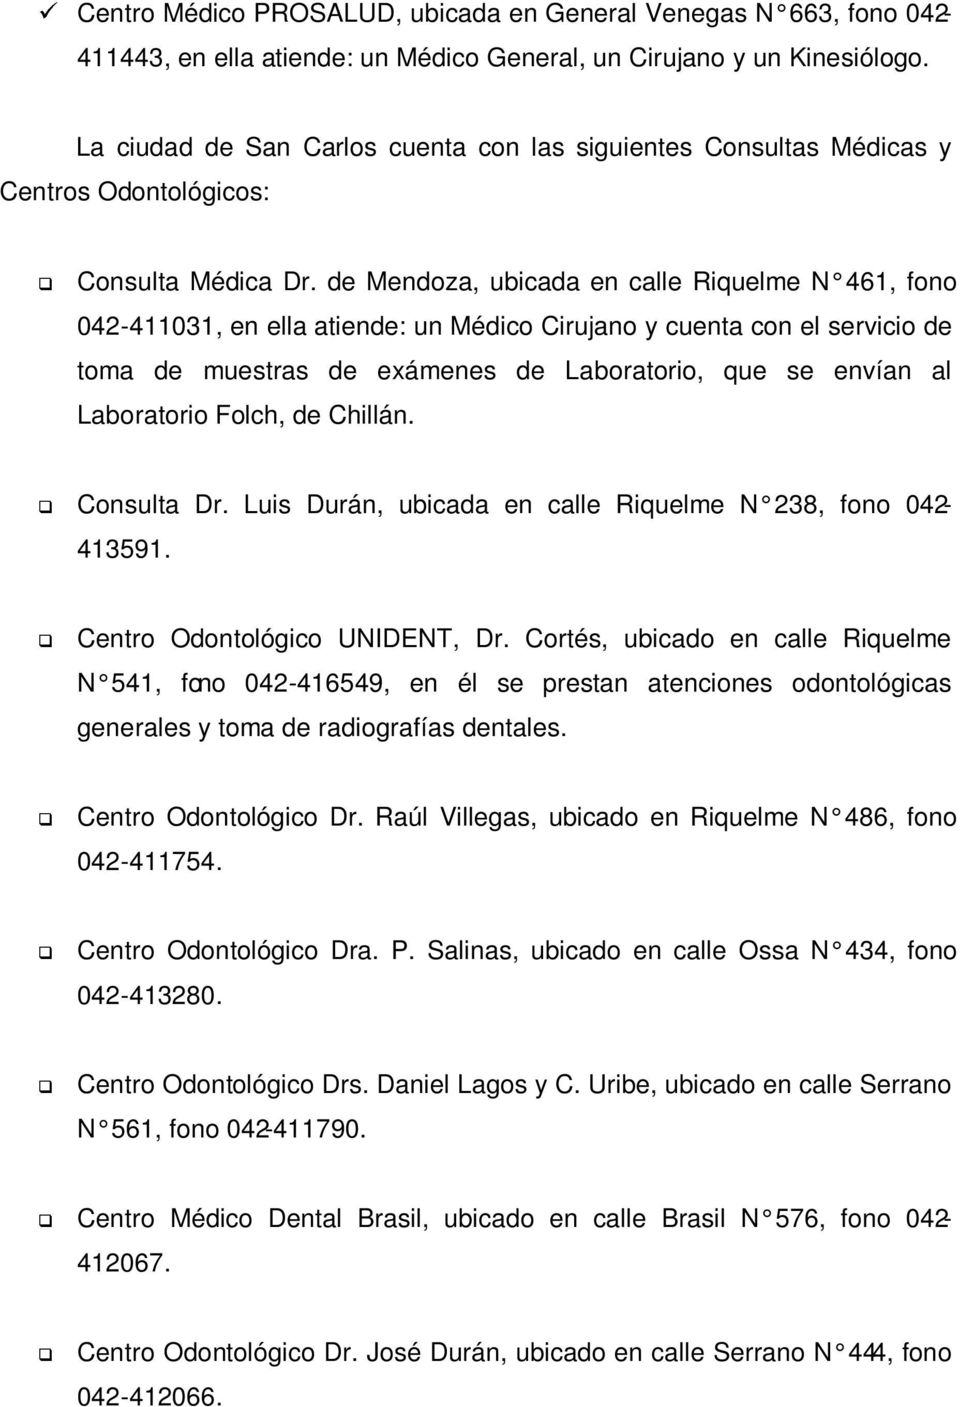 de Mendoza, ubicada en calle Riquelme N 461, fono 042-411031, en ella atiende: un Médico Cirujano y cuenta con el servicio de toma de muestras de exámenes de Laboratorio, que se envían al Laboratorio